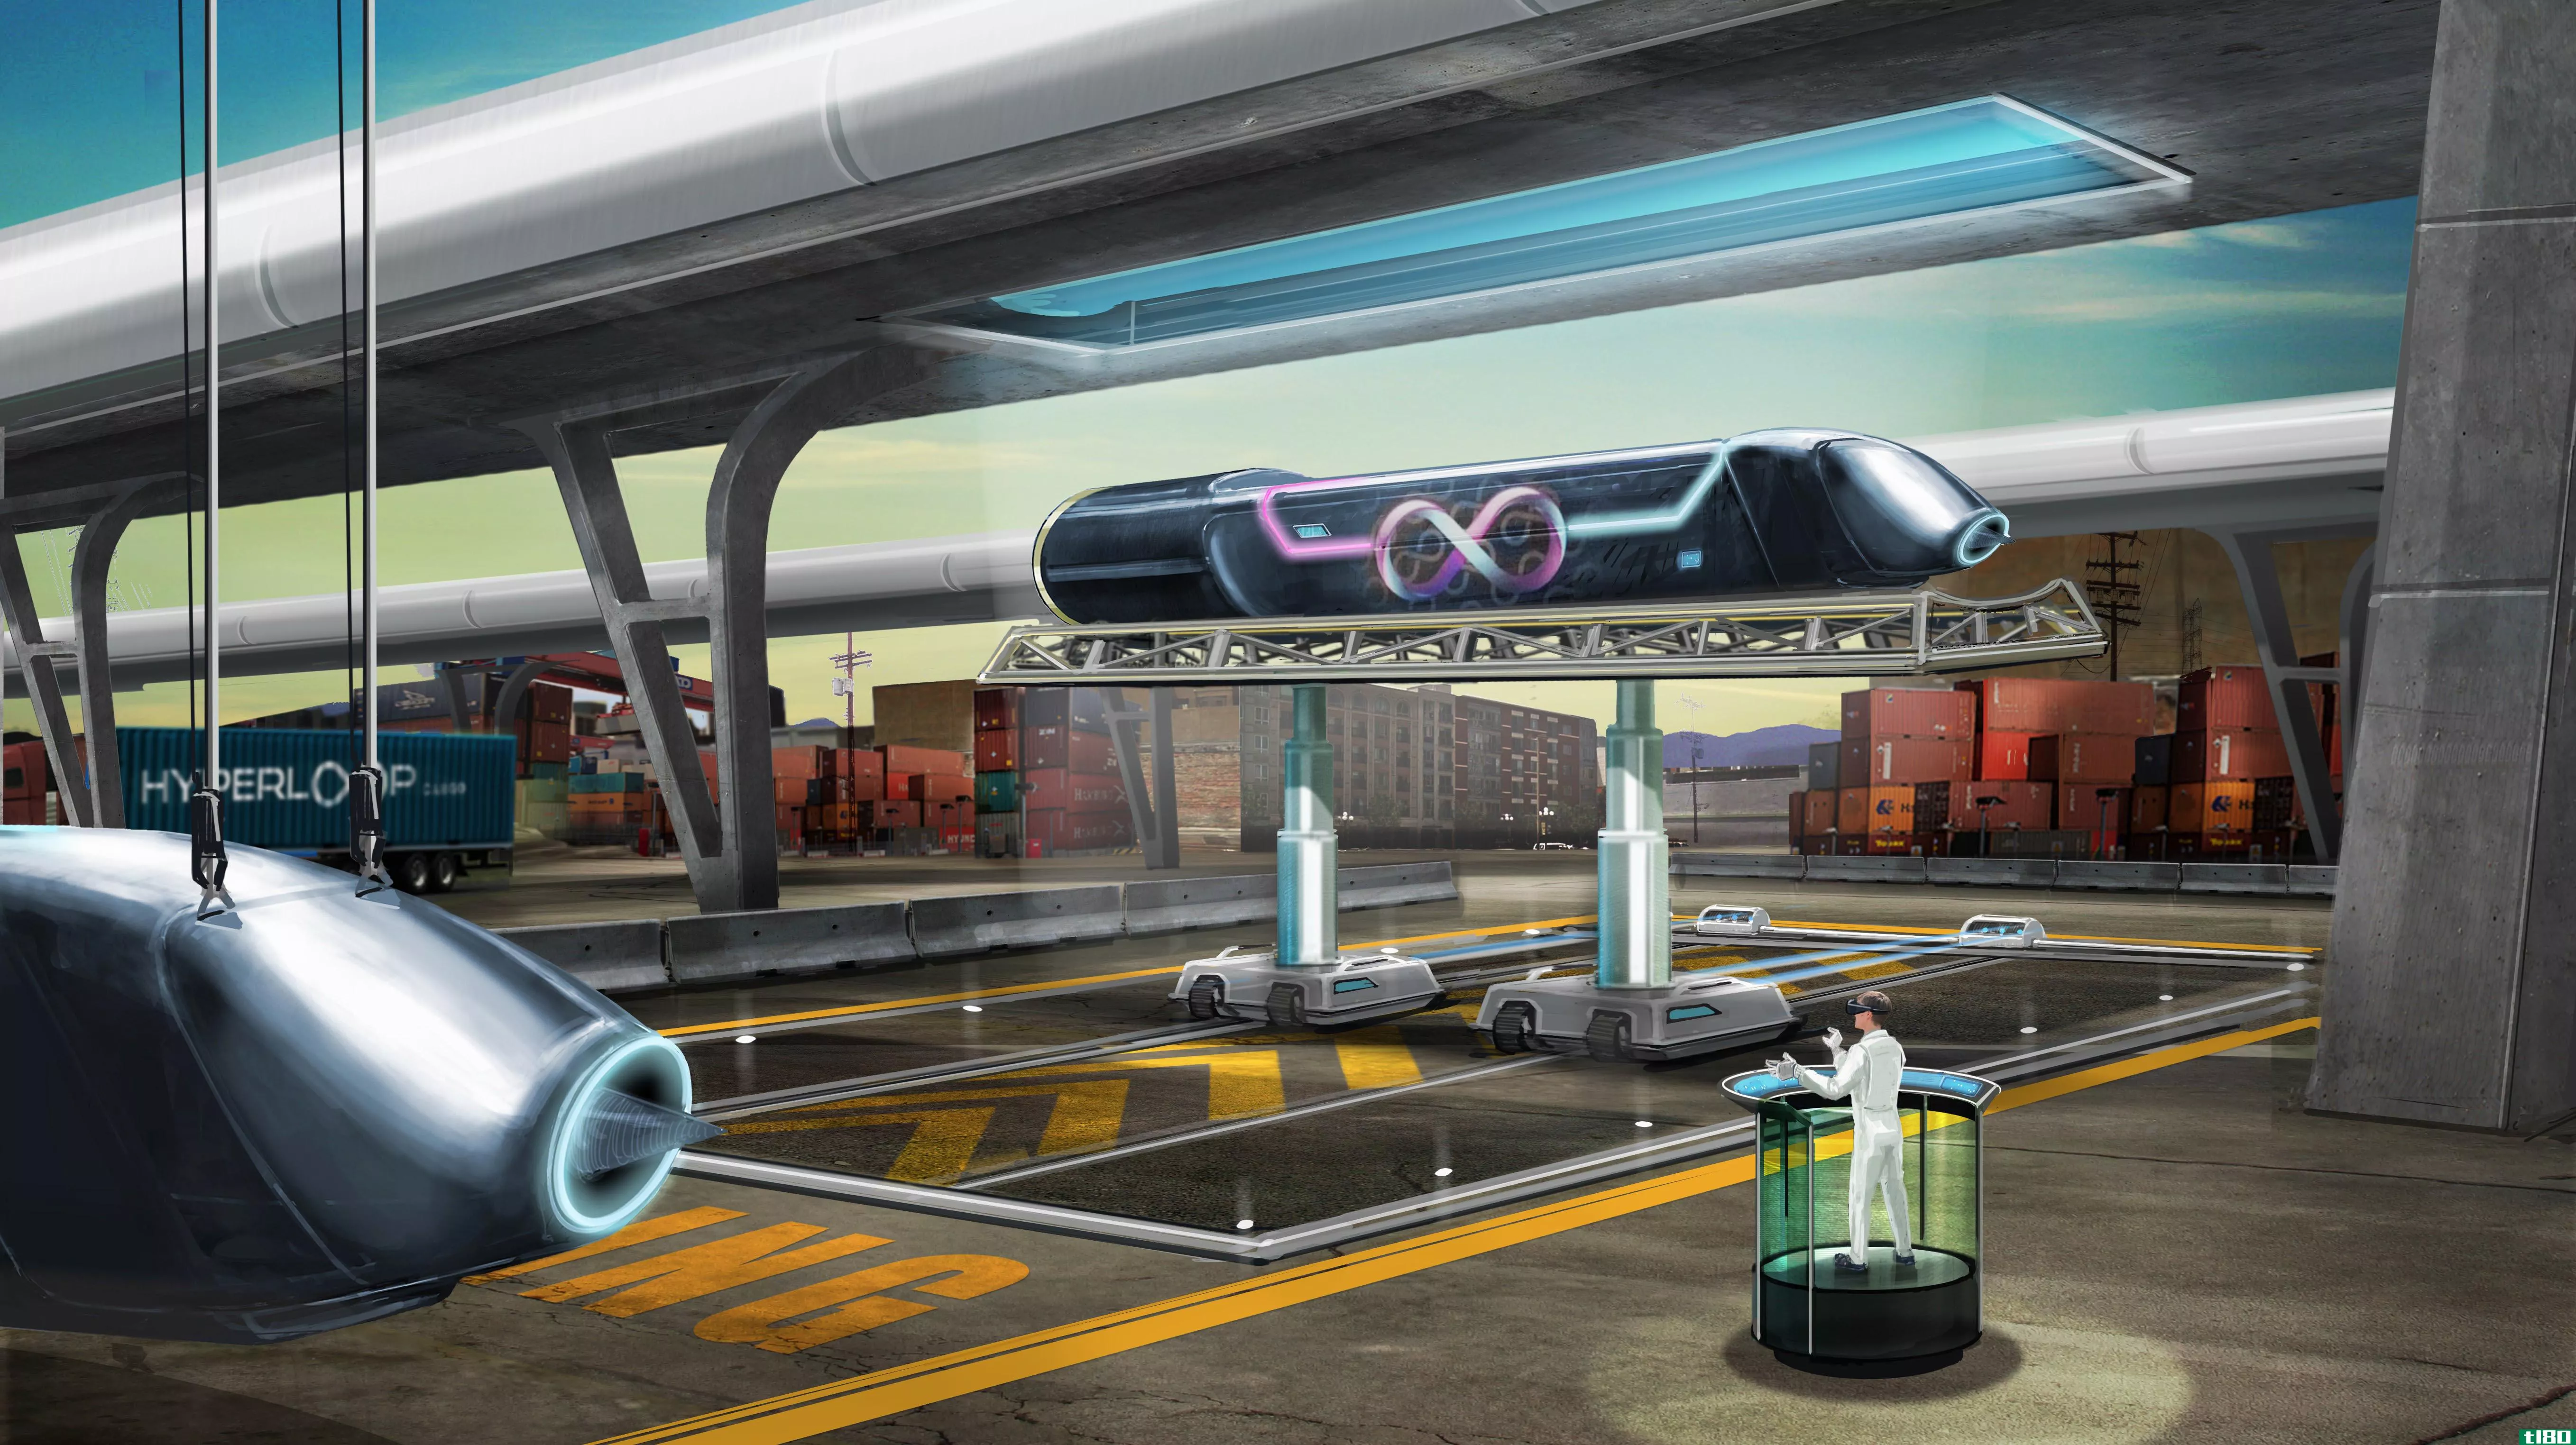 hyperloop tech加入spacex赞助吊舱设计竞赛